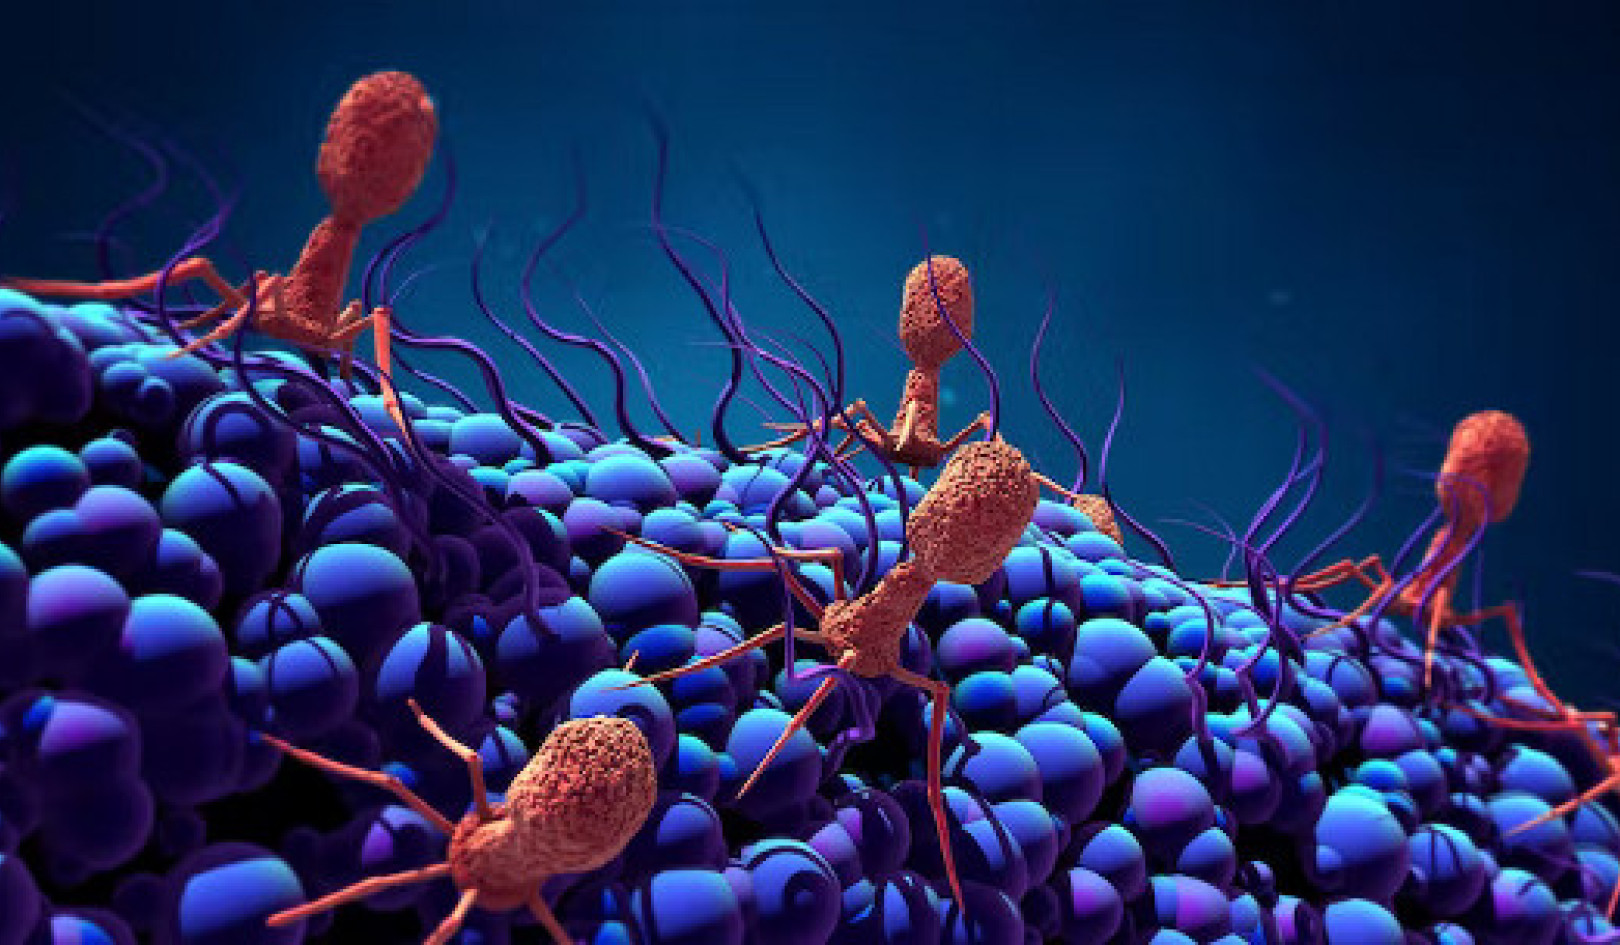 כמה וירוסים ומיקרובים ממתינים "צופים" בך